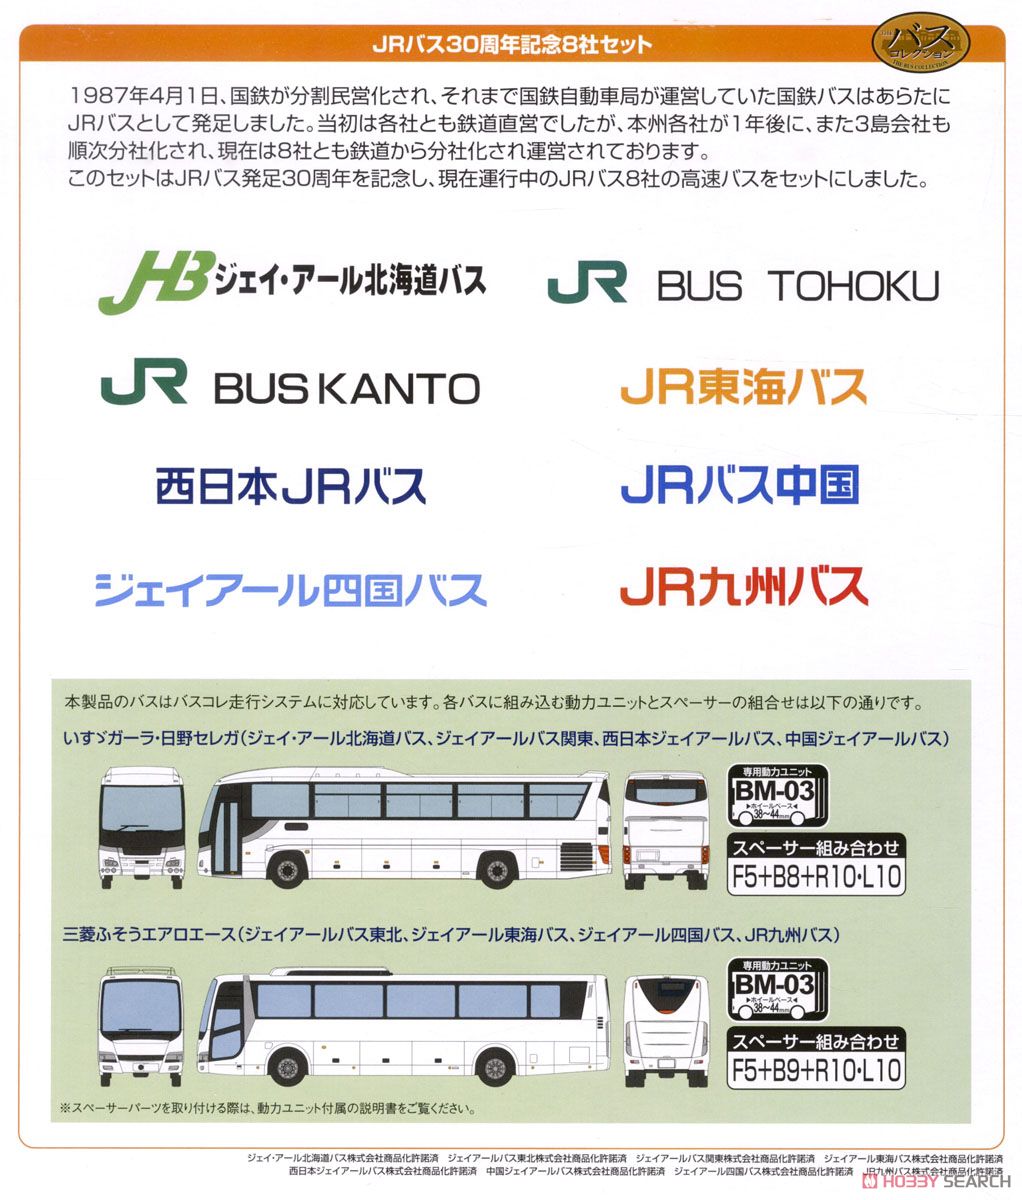 ザ・バスコレクション JRバス30周年記念8社セット (8台セット) (鉄道模型) 解説1